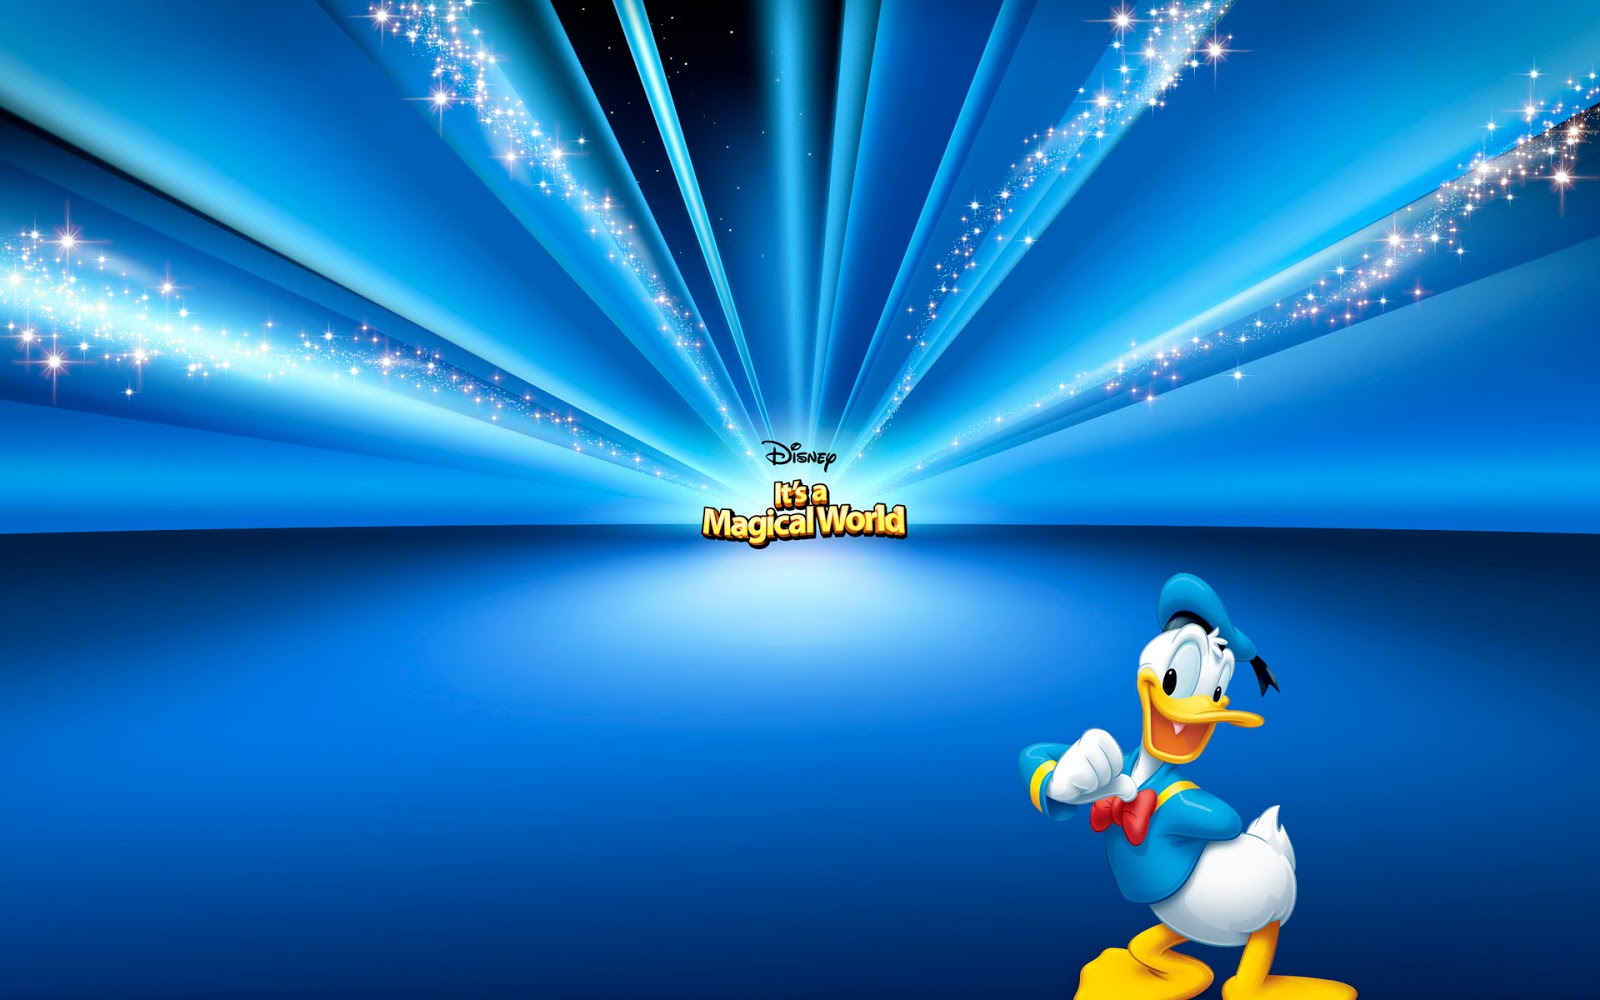 Imágene Experience 8 Fondos Mágicos De Disney Divertidos Y Coloridos